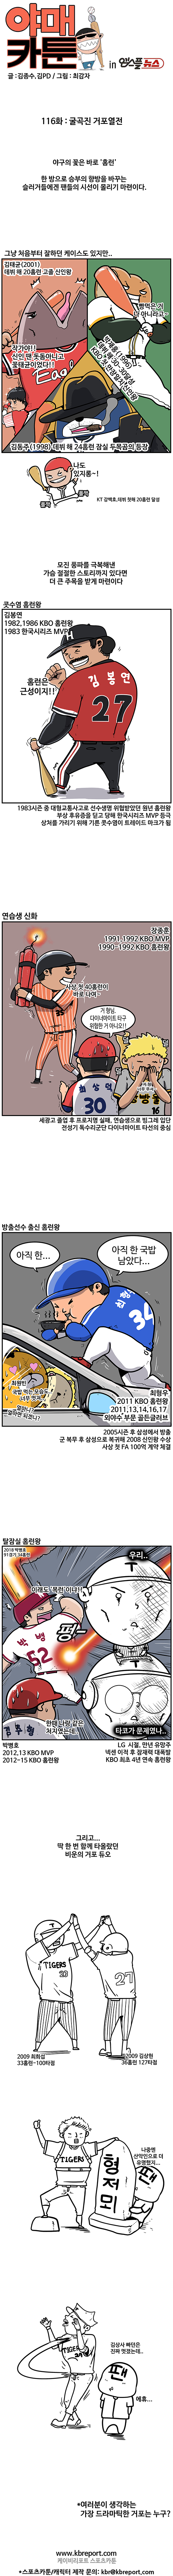 출처: [KBO 야매카툰] '거포열전' 장종훈부터 박병호까지